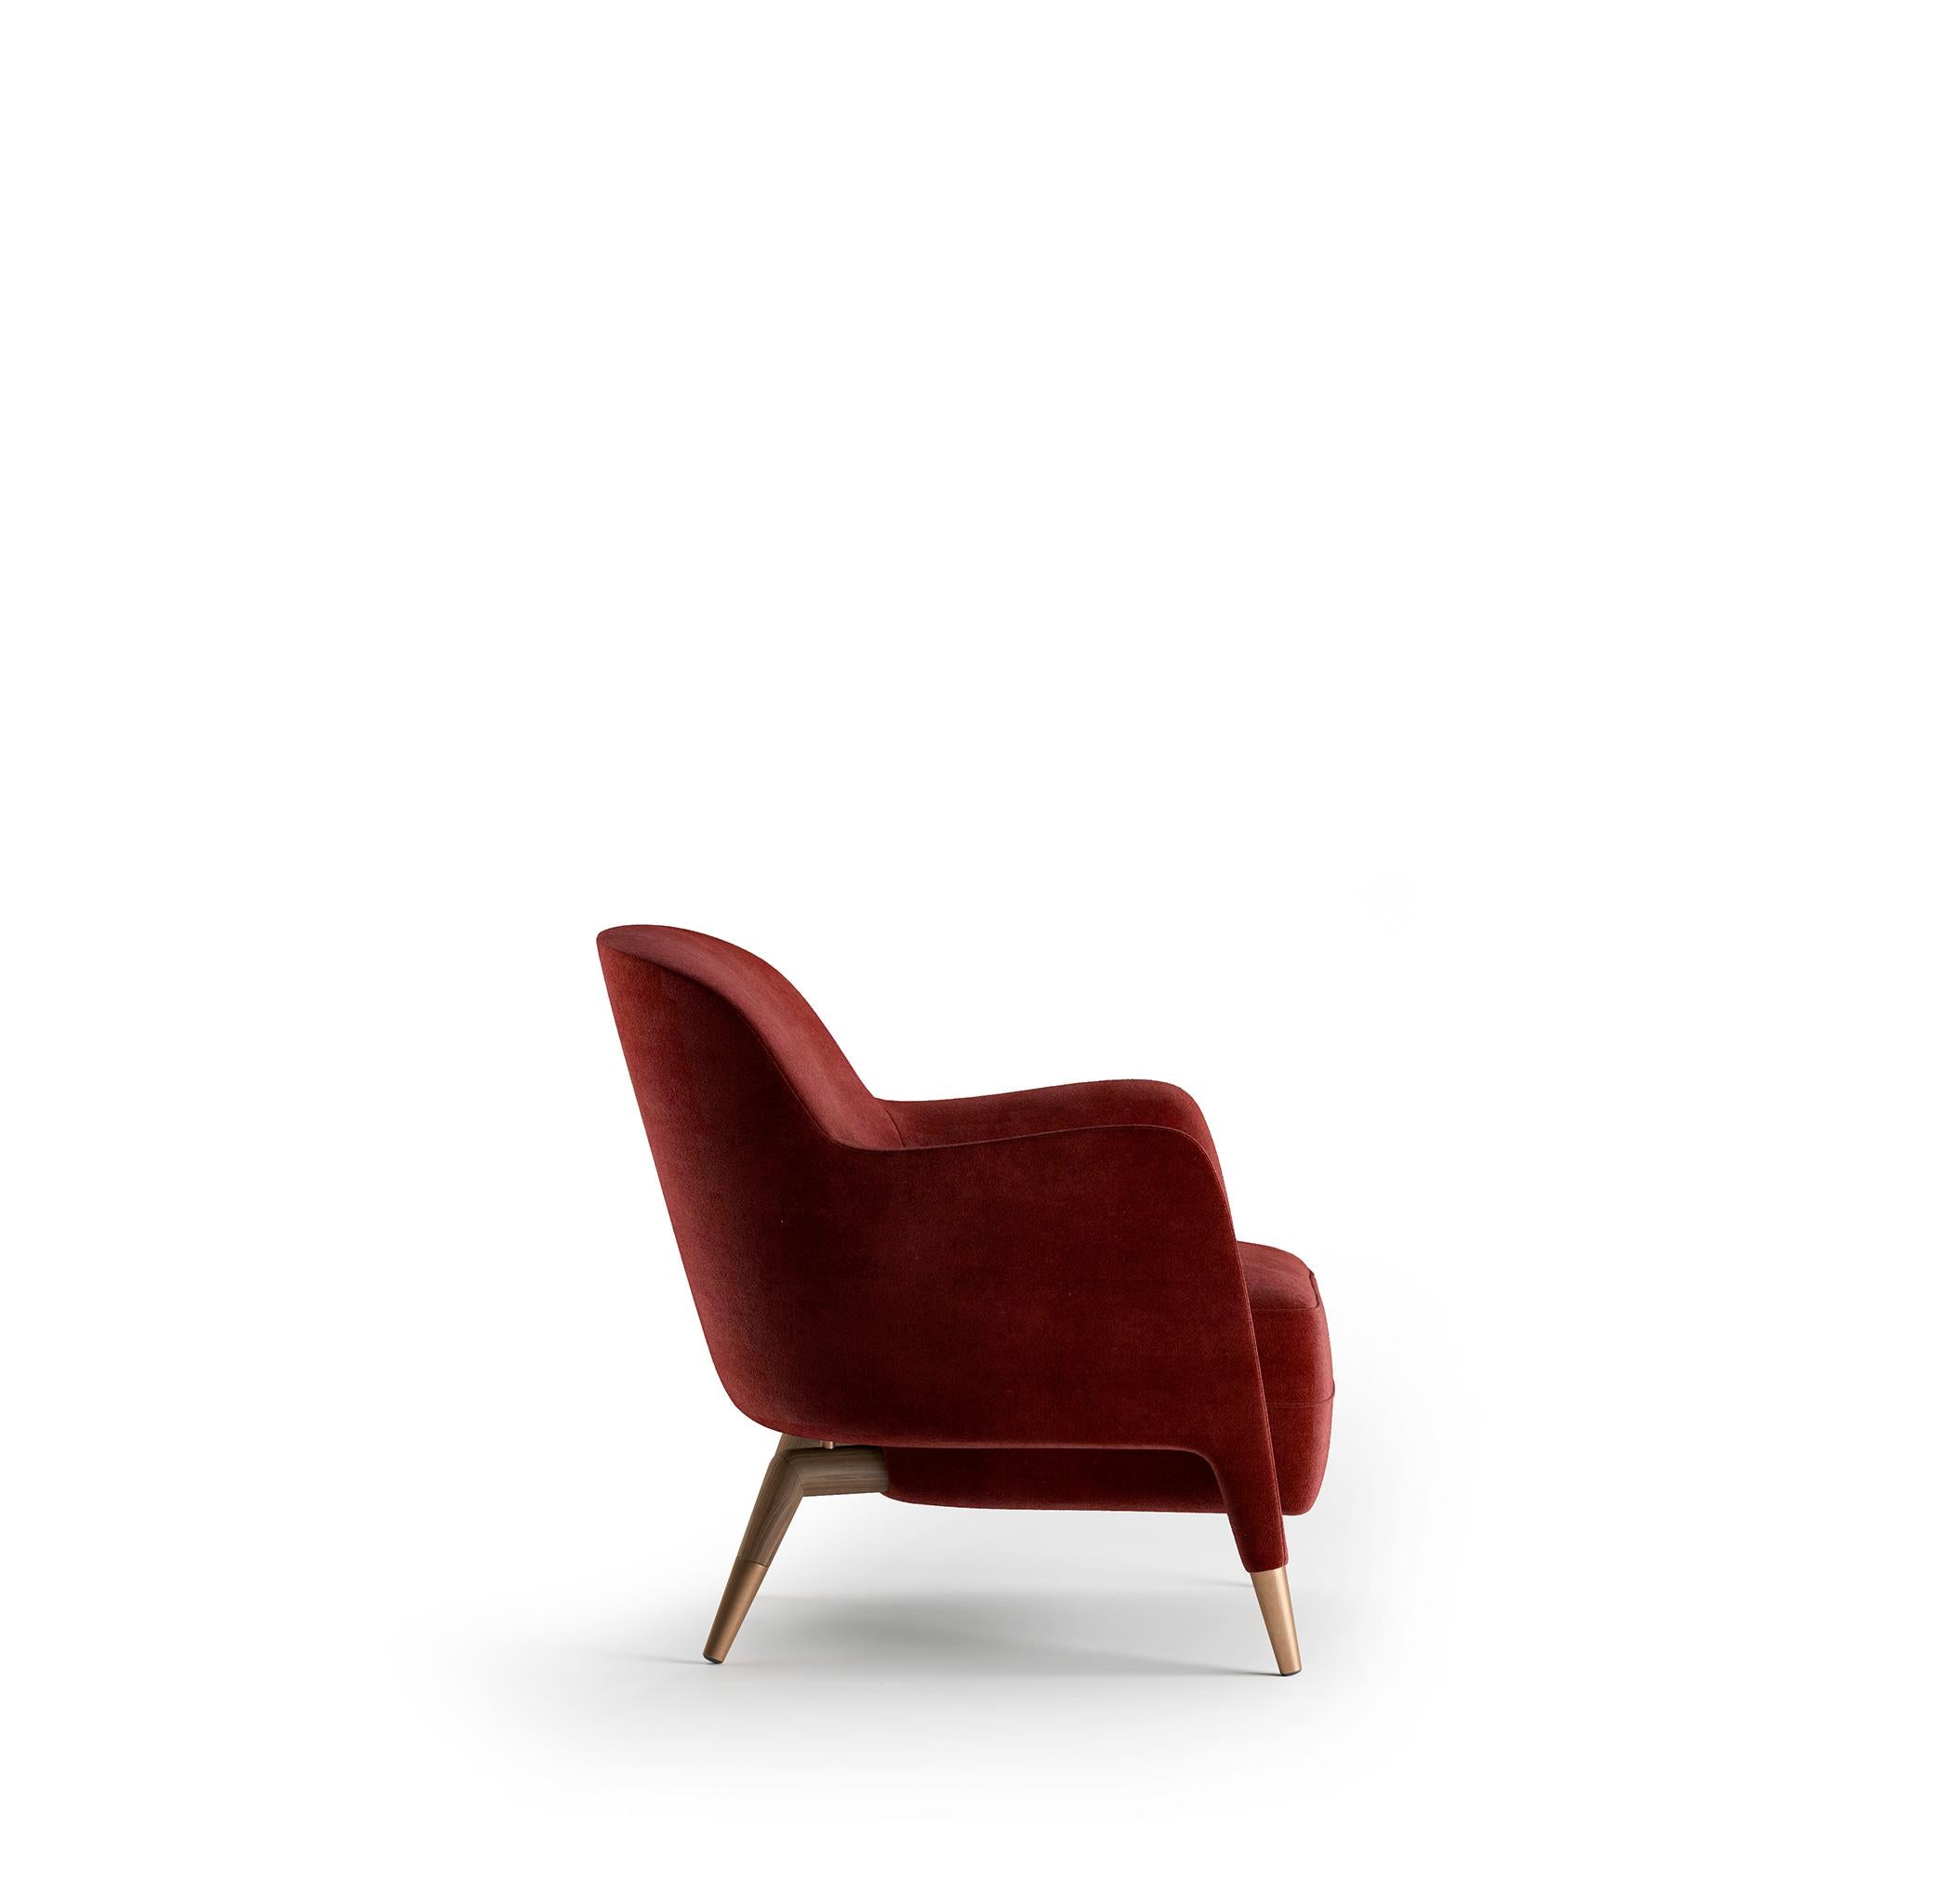 D.151.4 Sessel aus Leinen von Gio Ponti - Fachmännische Herstellung in Italien durch Molteni&C. 

Gio Ponti ließ sich bei der Gestaltung dieses Sessels, der für den Einsatz auf Ozeandampfern bestimmt war, von der Seefahrt inspirieren und ist heute